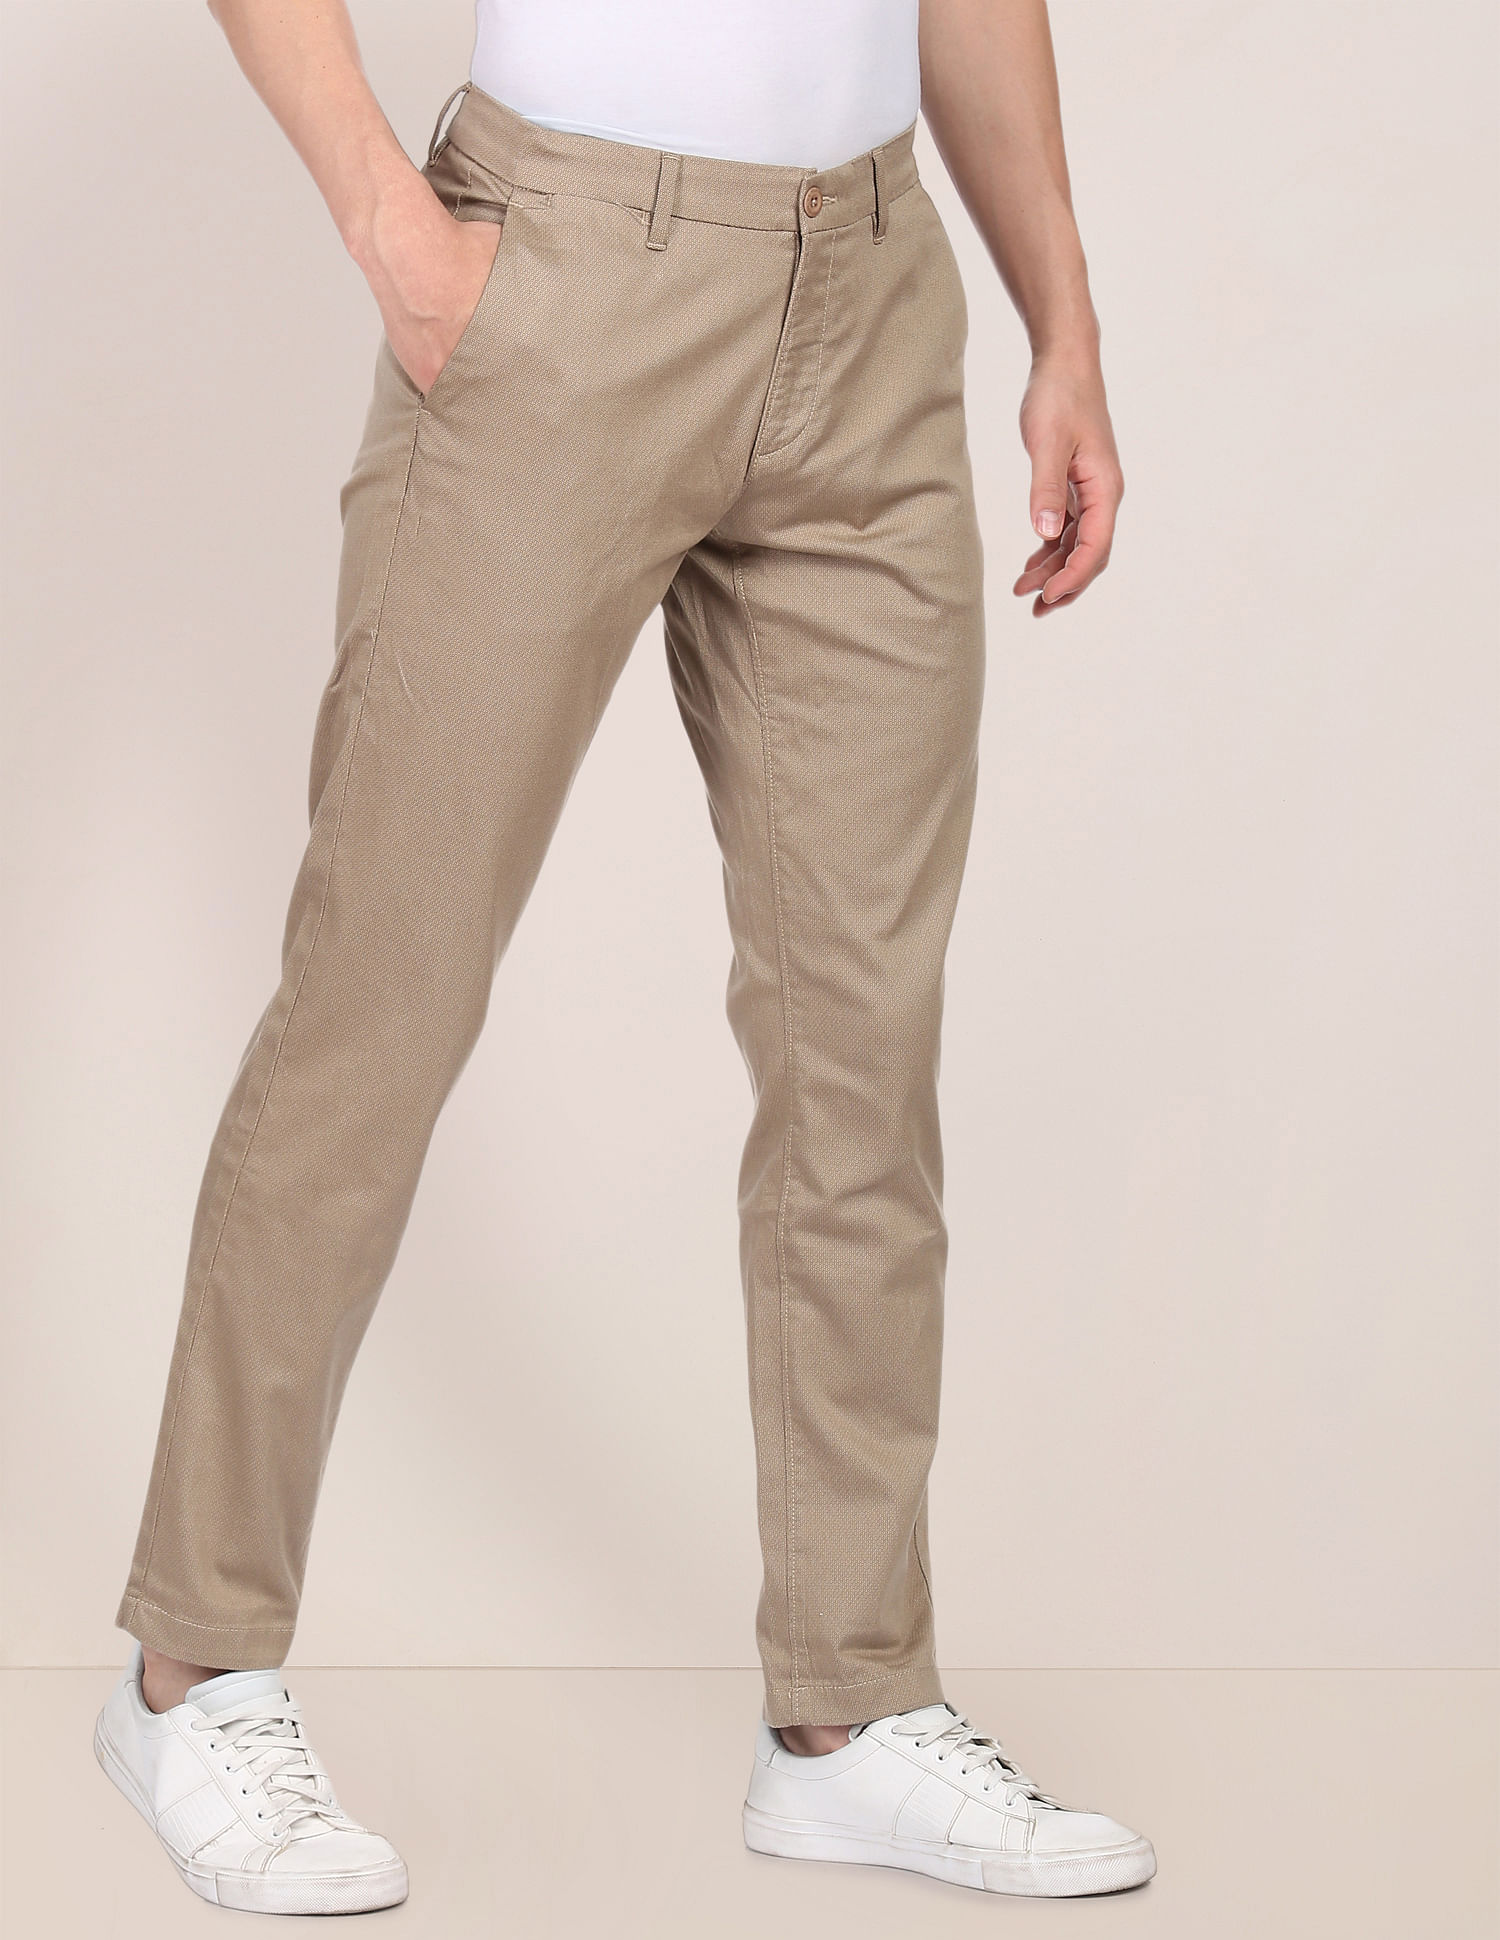 Buy Men Cream Regular Fit Solid Casual Trousers Online  766037  Allen  Solly